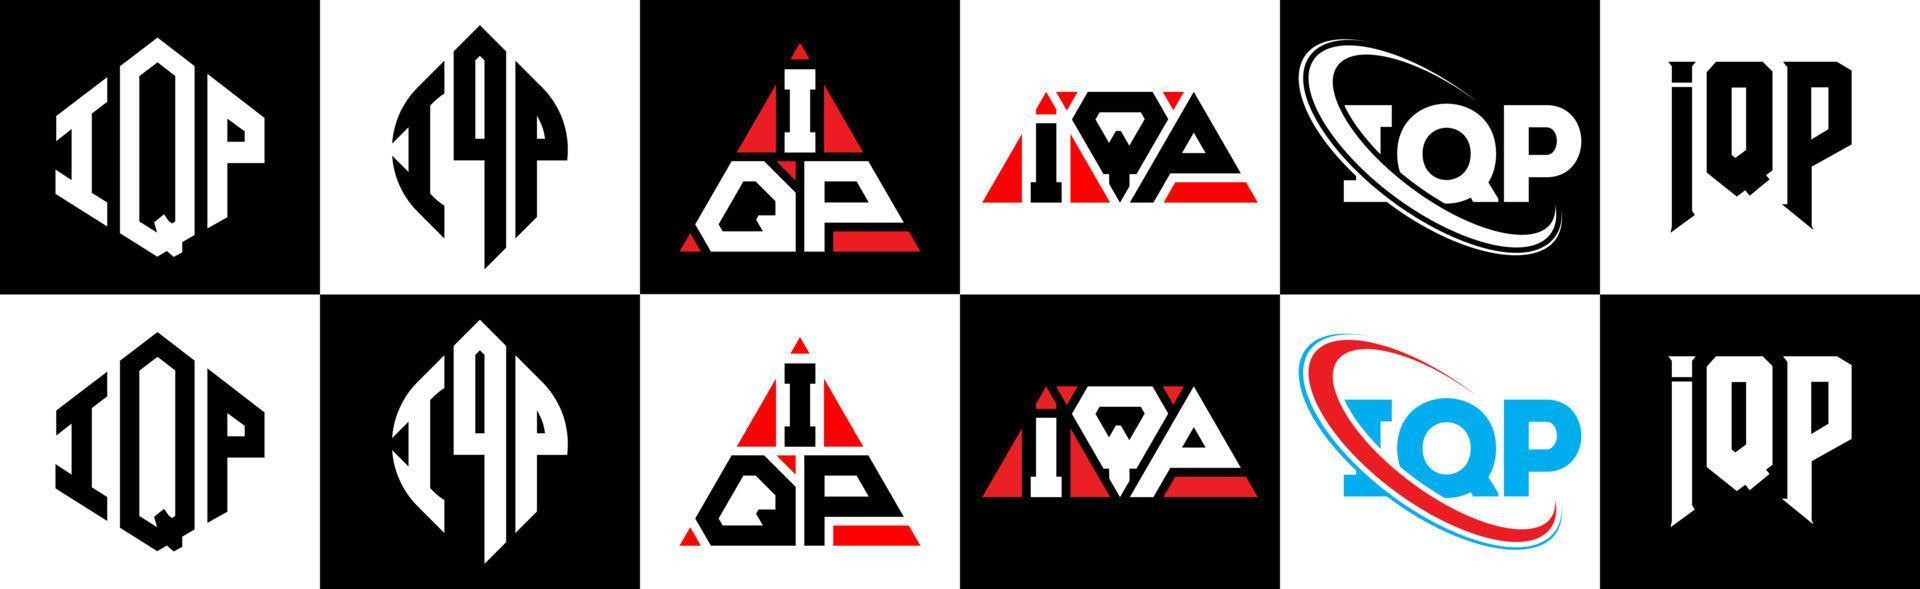 création de logo de lettre iqp en six styles. polygone iqp, cercle, triangle, hexagone, style plat et simple avec logo de lettre de variation de couleur noir et blanc dans un plan de travail. logo minimaliste et classique iqp vecteur